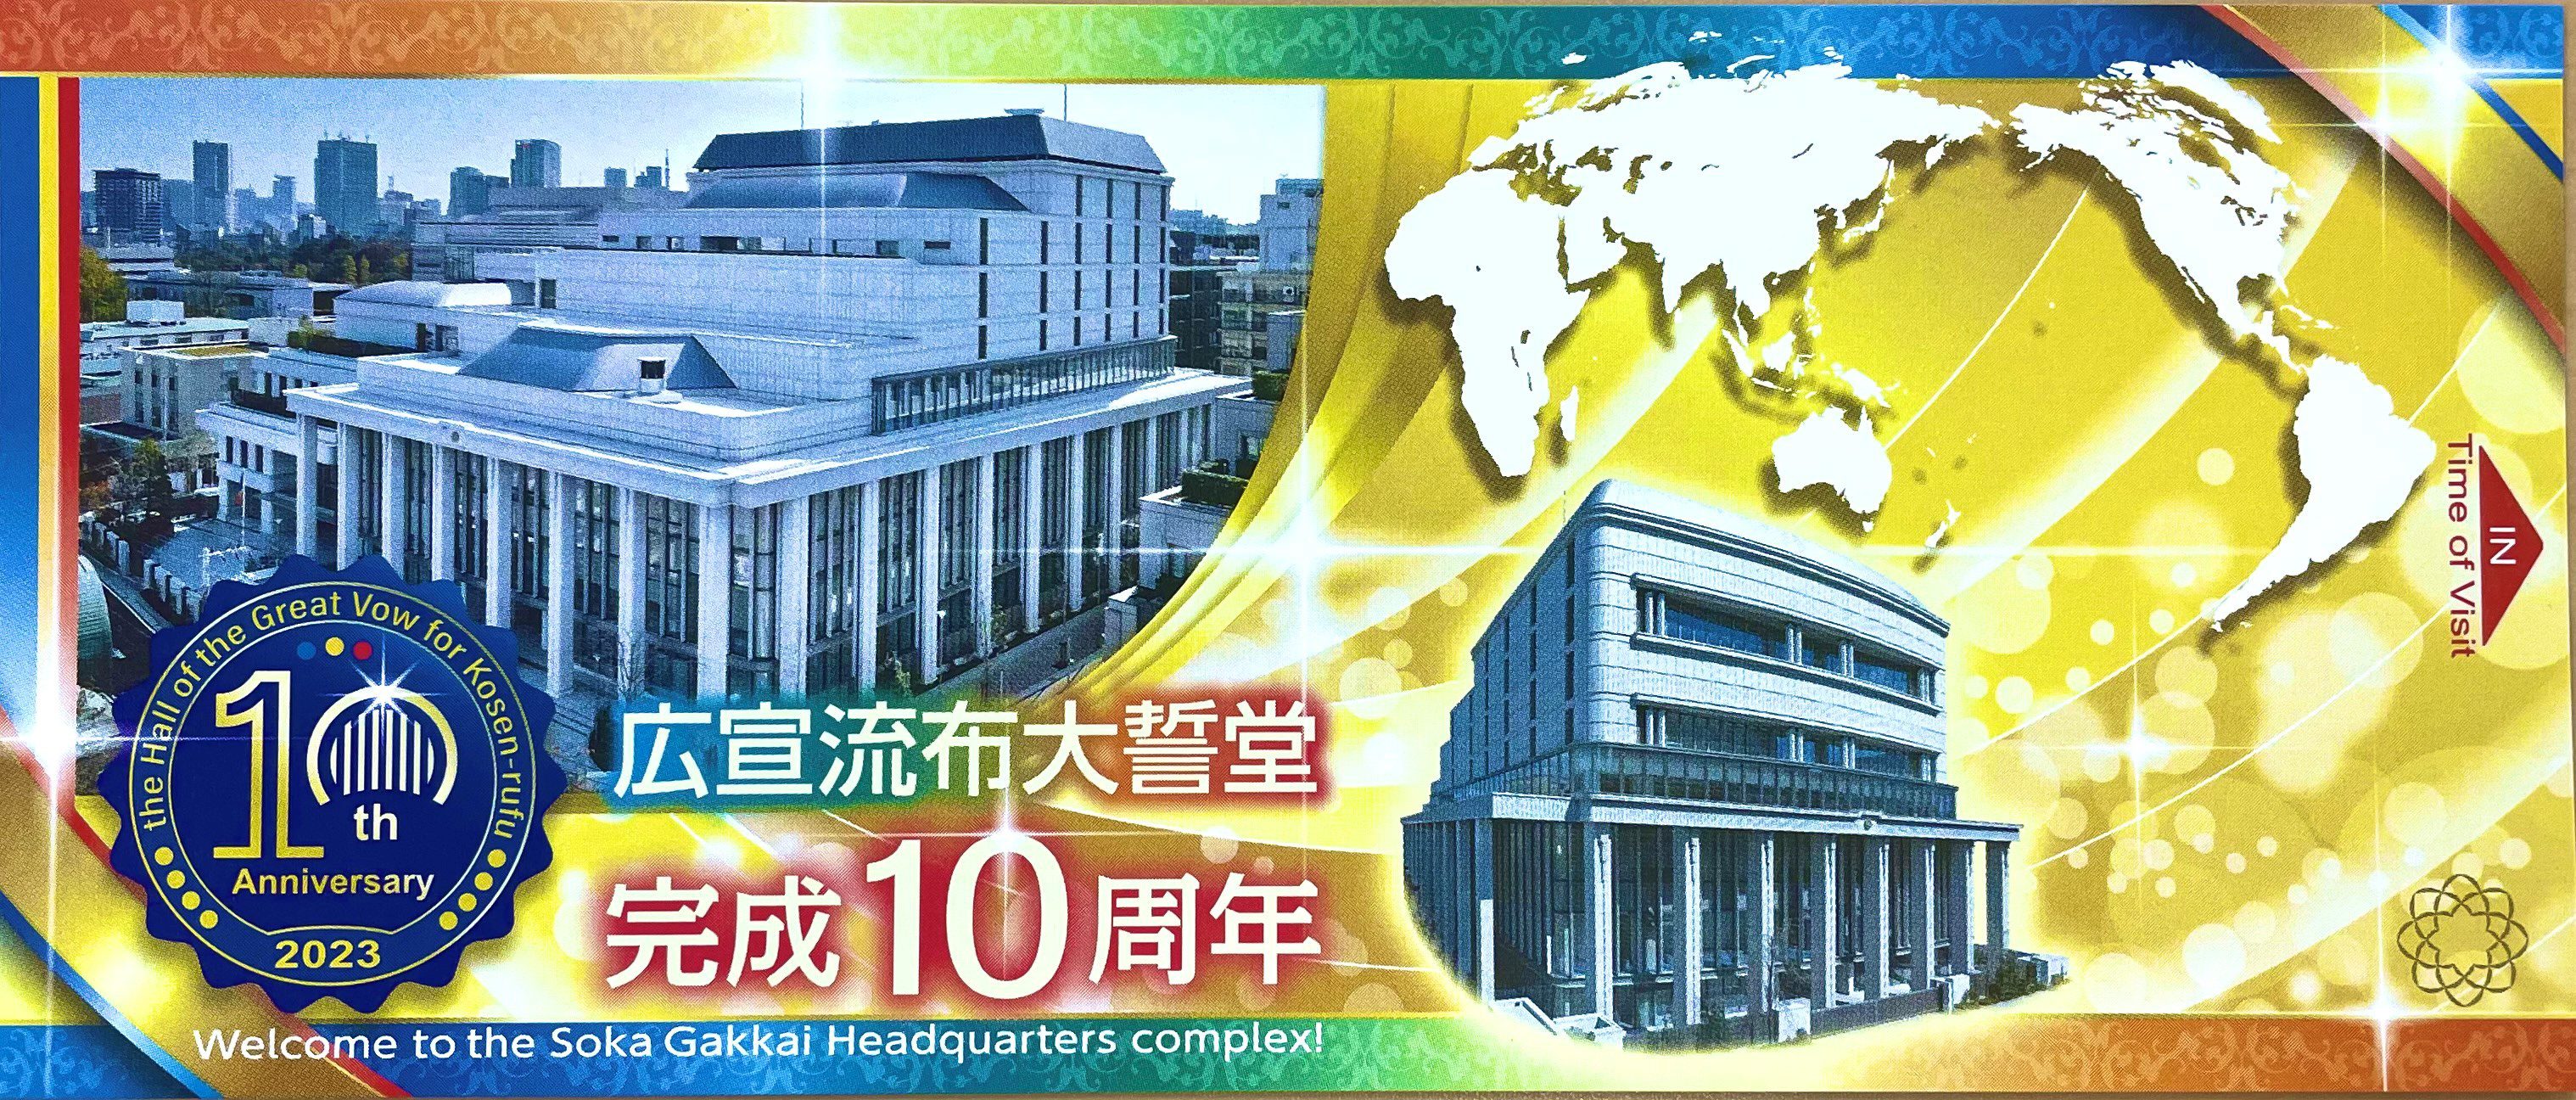 ネット限定】 広宣流布大誓堂完成10周年の記念冊子 オールカラー20P 